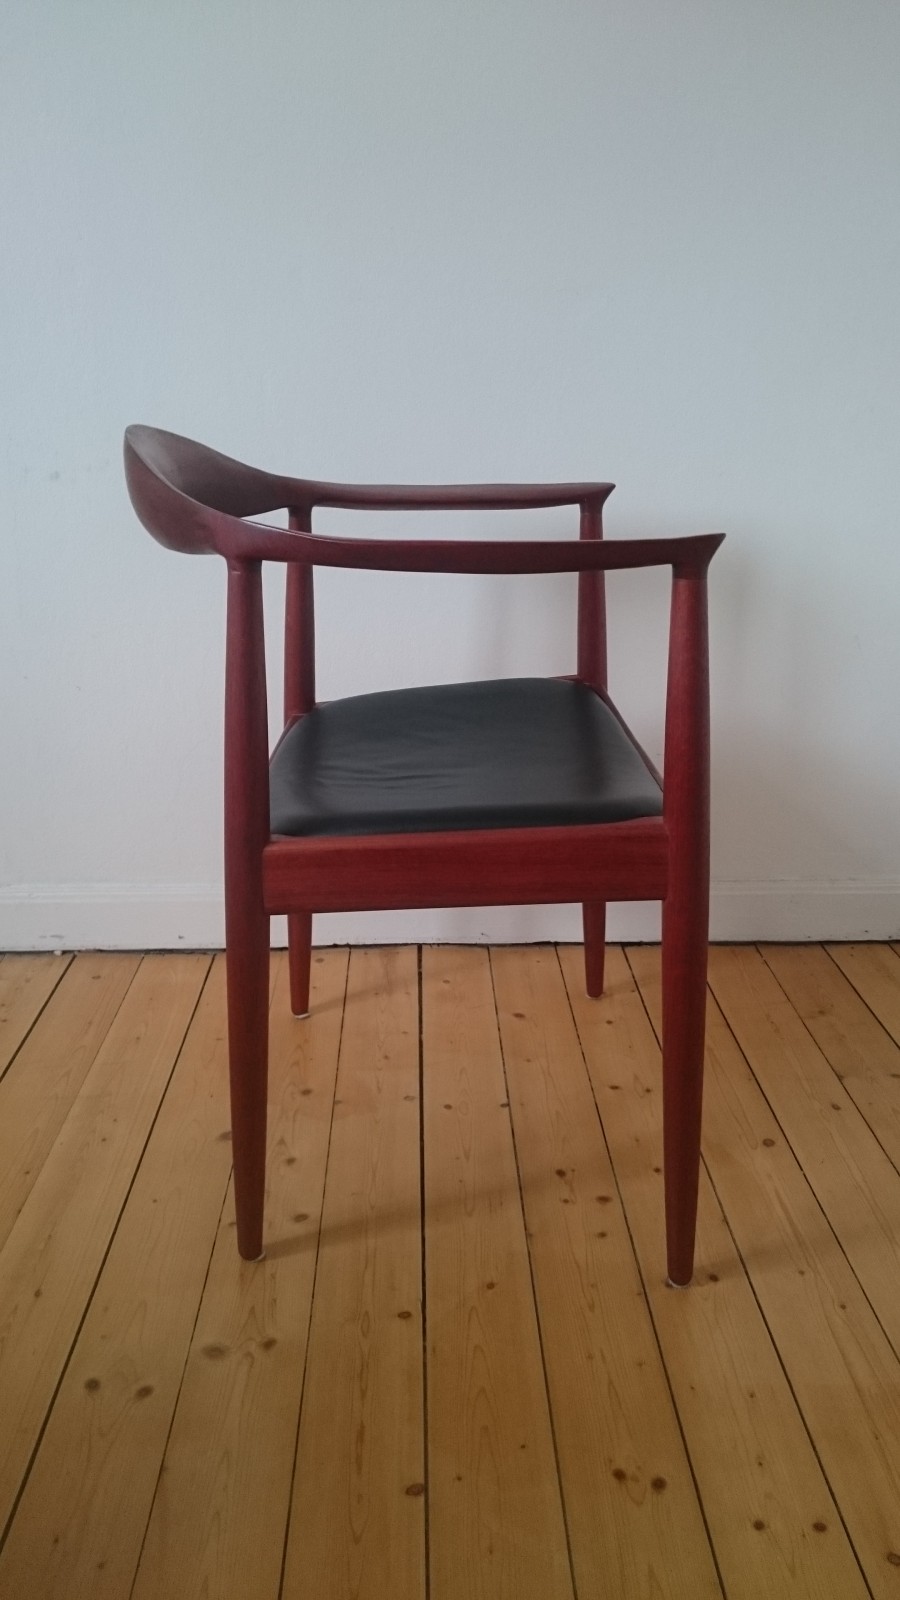 Stol – kopia av Wegner's The Chair